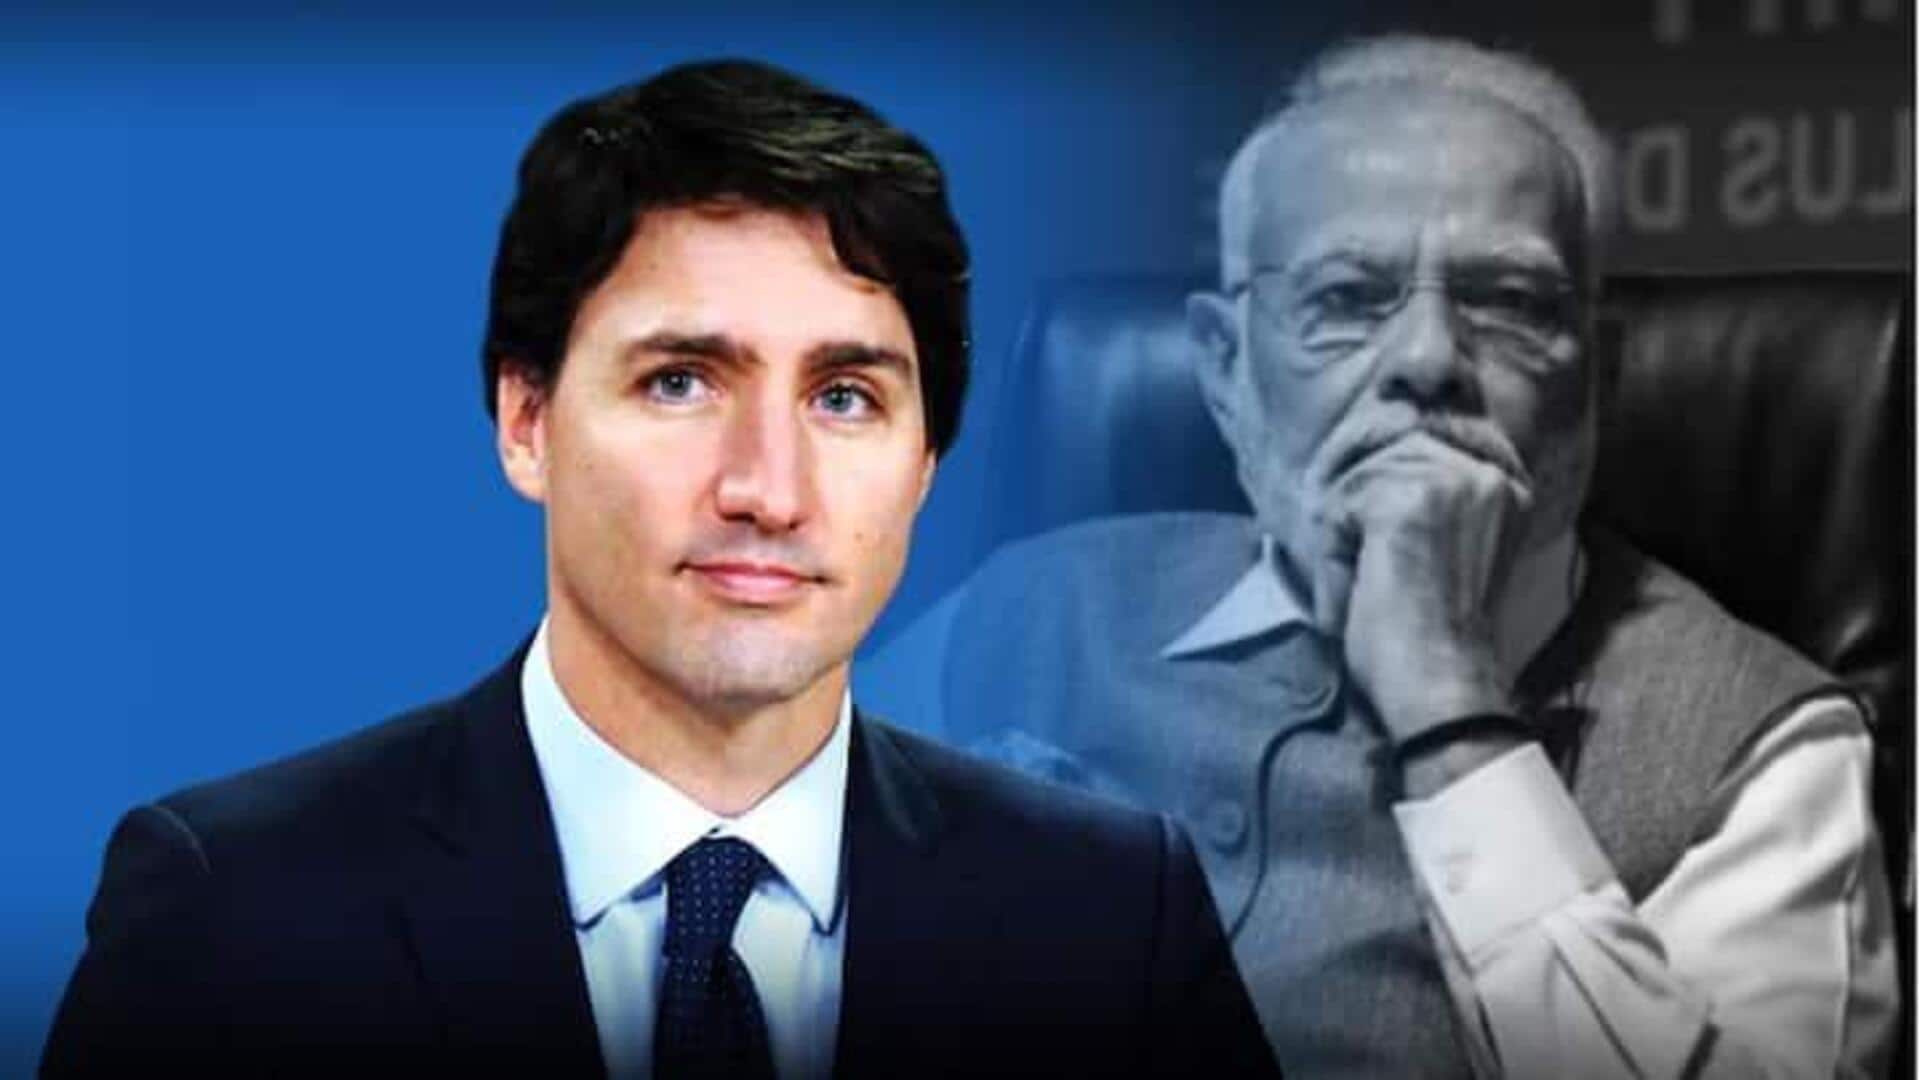 Justin Trudeau congratulates Modi on re-election, stresses rule of law 